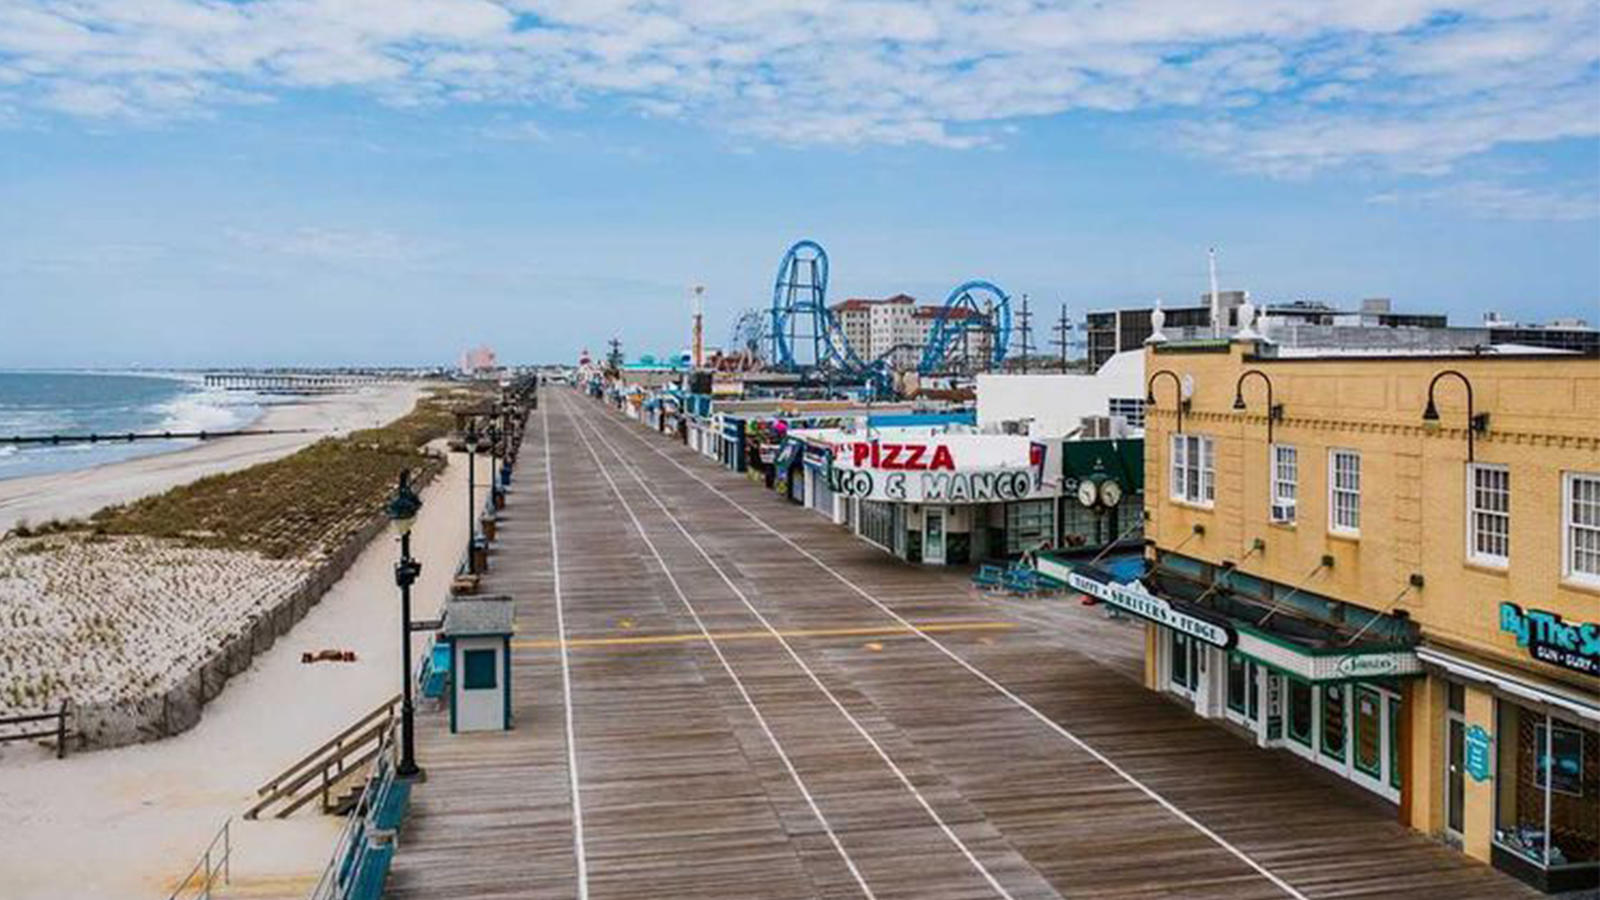 The boardwalk in Ocean City, New Jersey